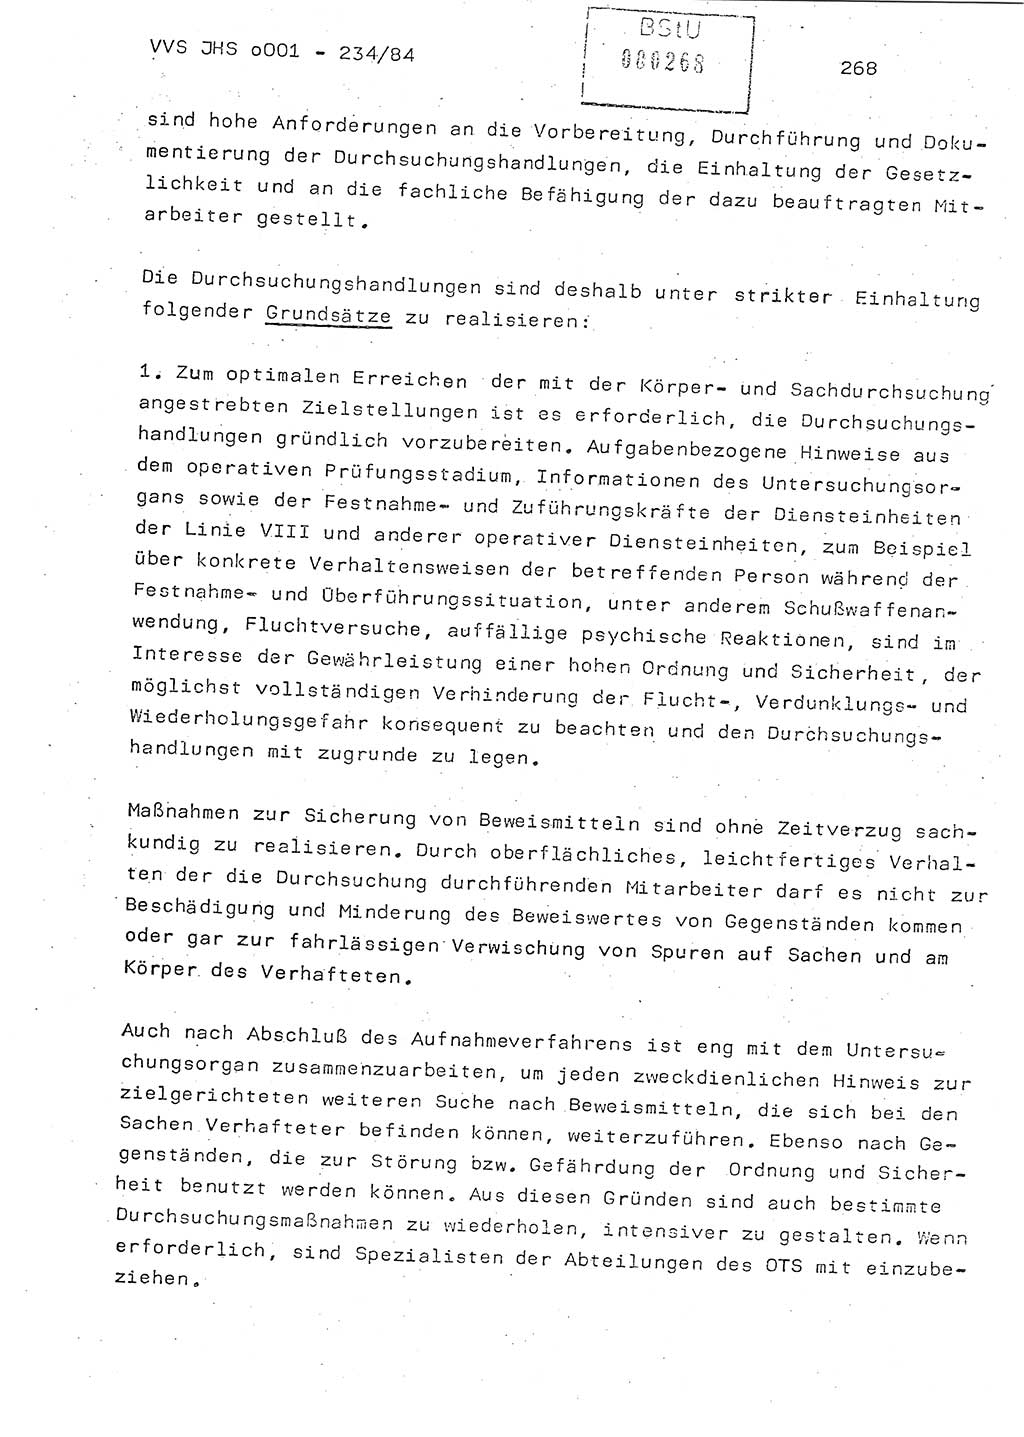 Dissertation Oberst Siegfried Rataizick (Abt. ⅩⅣ), Oberstleutnant Volkmar Heinz (Abt. ⅩⅣ), Oberstleutnant Werner Stein (HA Ⅸ), Hauptmann Heinz Conrad (JHS), Ministerium für Staatssicherheit (MfS) [Deutsche Demokratische Republik (DDR)], Juristische Hochschule (JHS), Vertrauliche Verschlußsache (VVS) o001-234/84, Potsdam 1984, Seite 268 (Diss. MfS DDR JHS VVS o001-234/84 1984, S. 268)